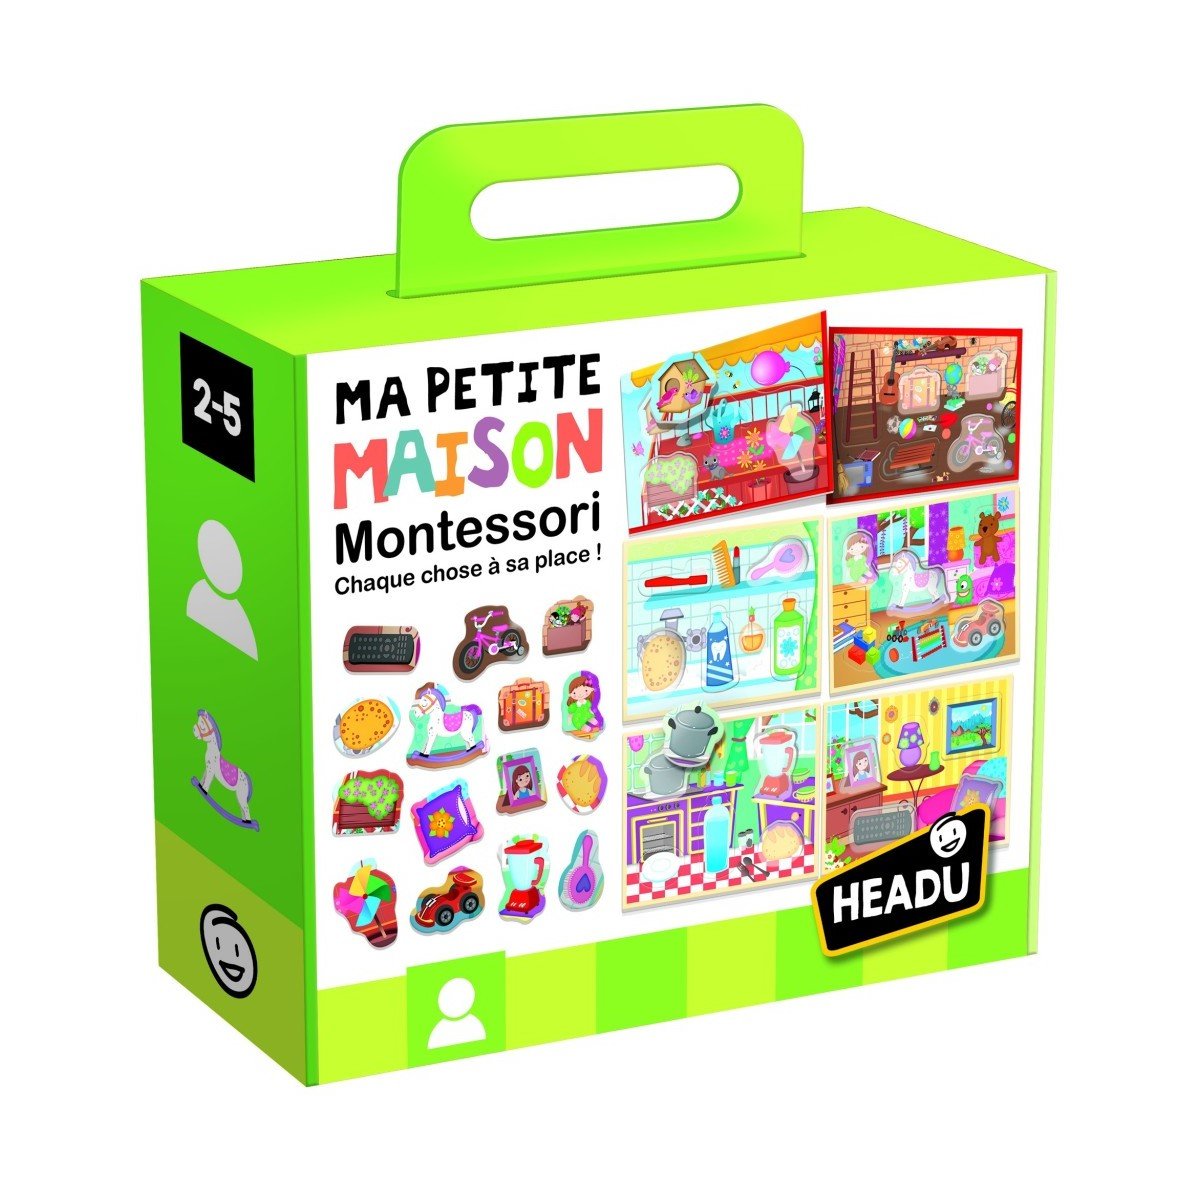 La Petite Maison Montessori Headu - La Grande Récré